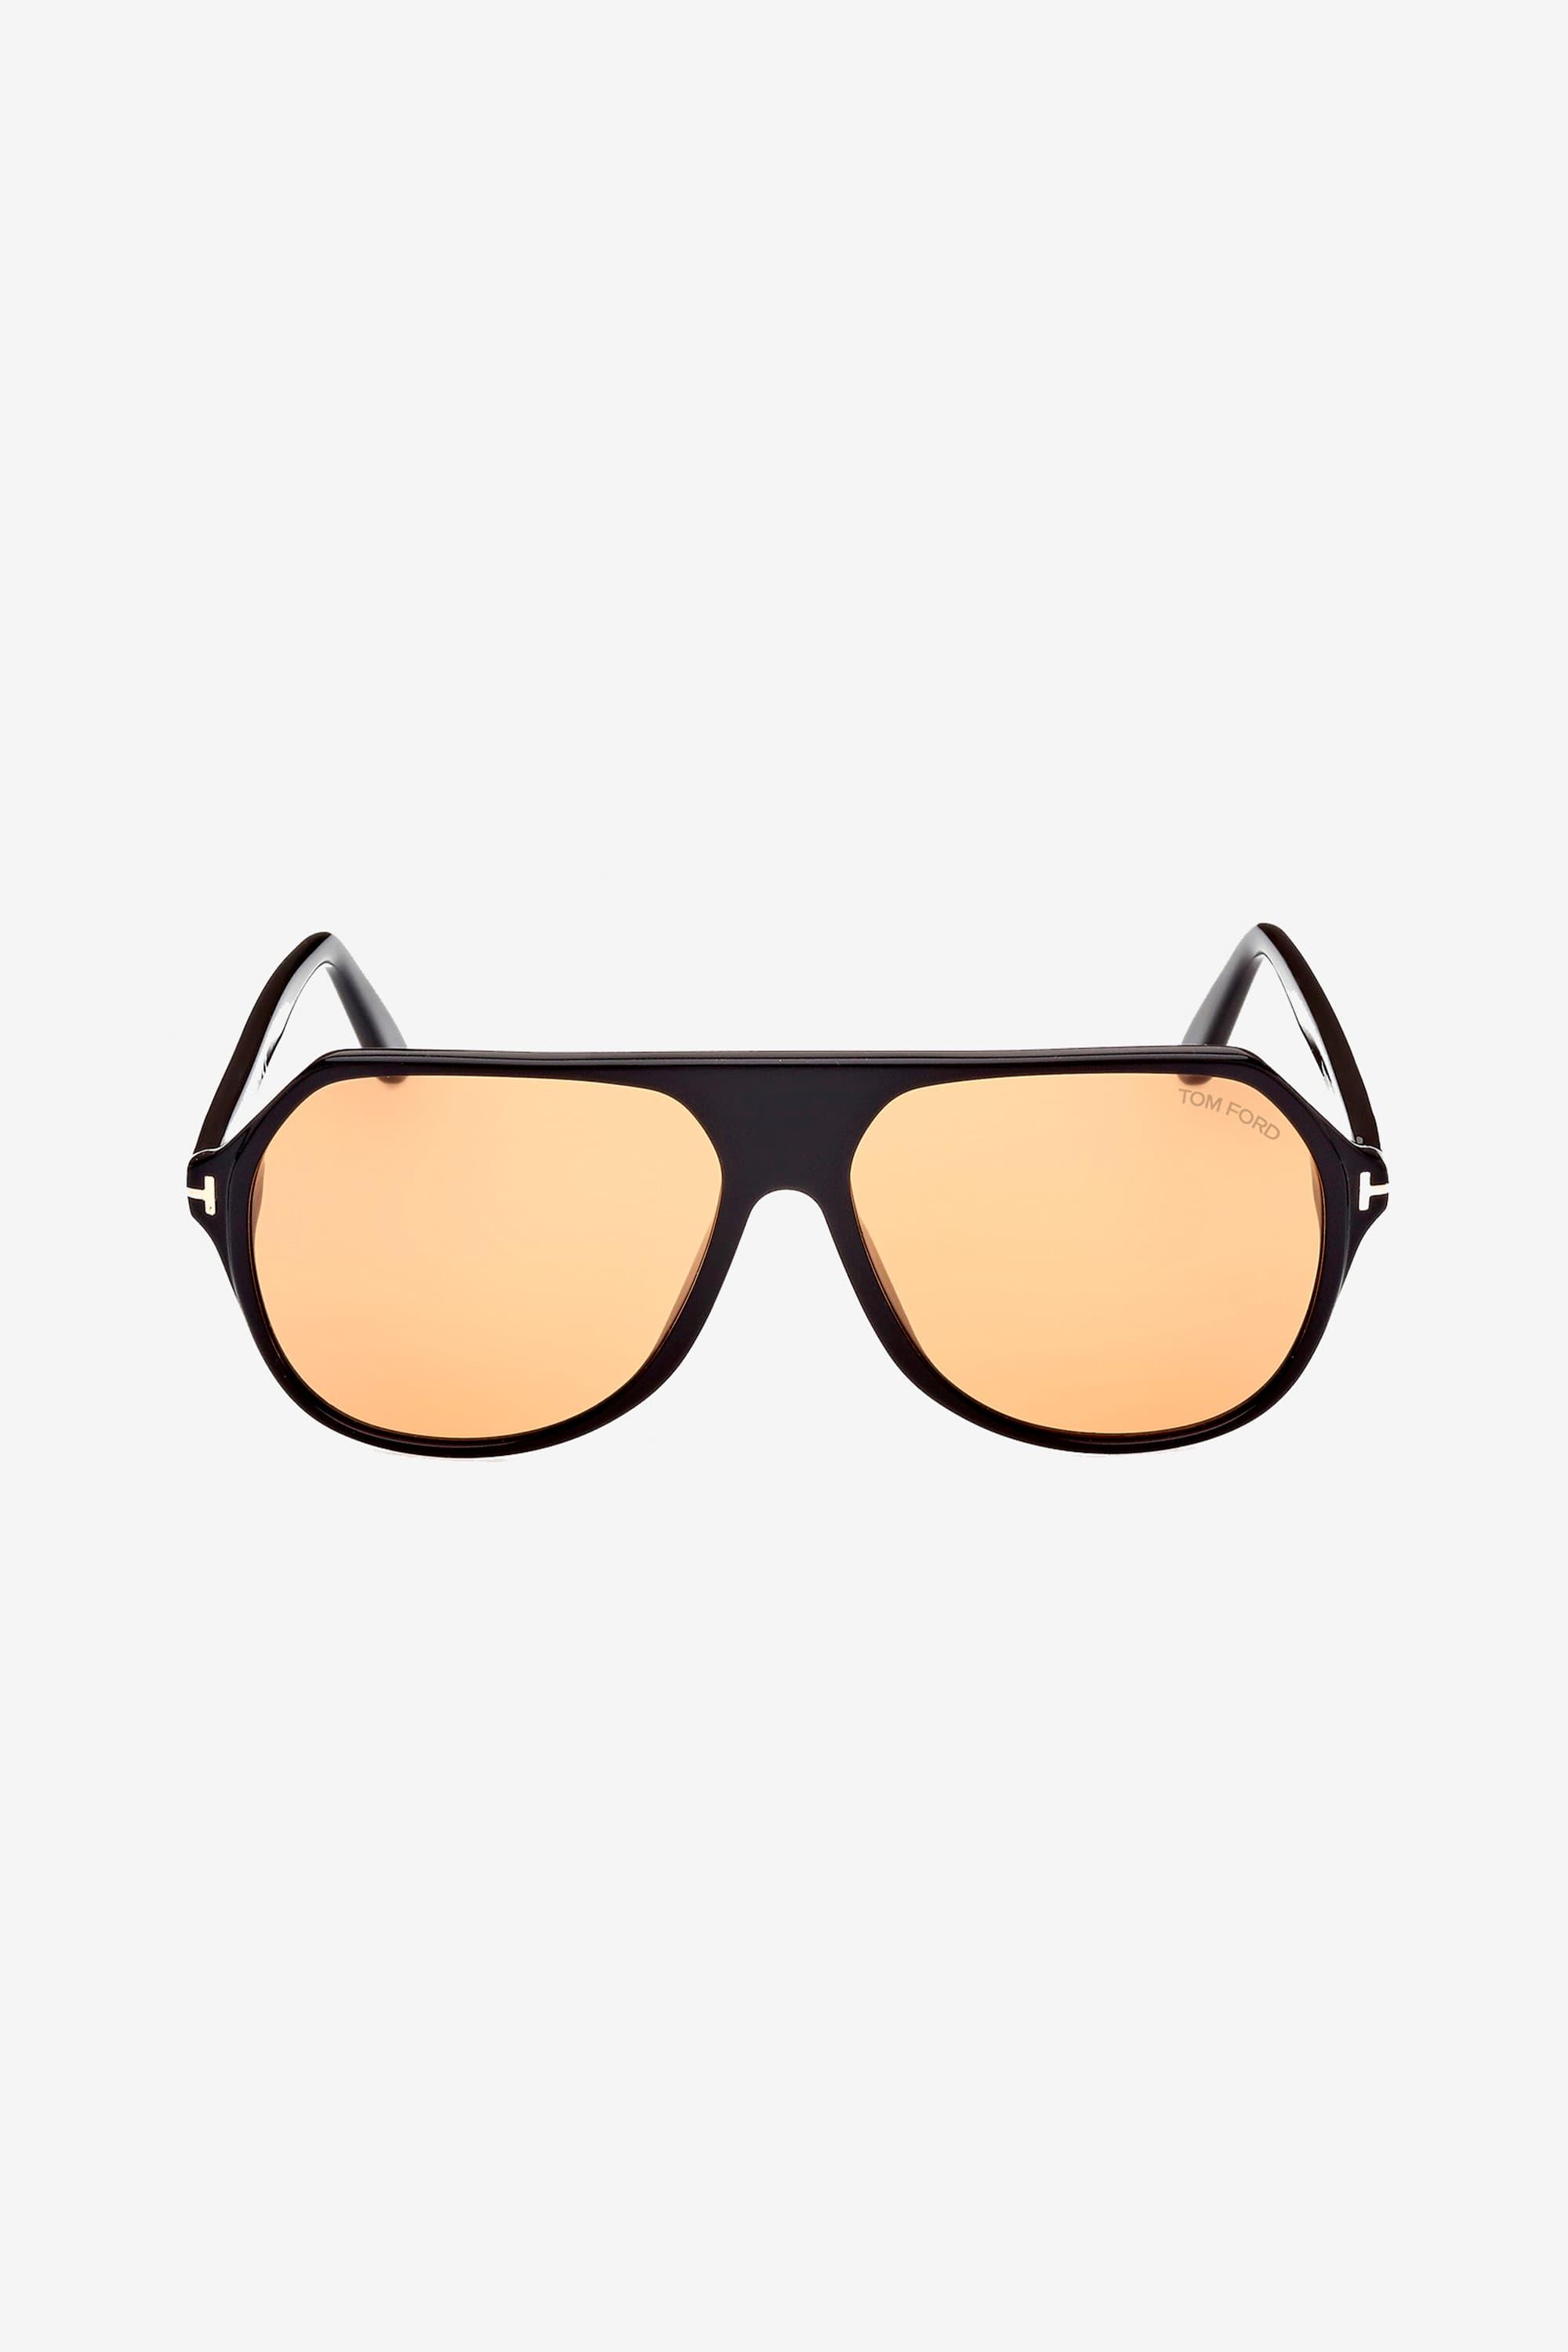 Tom Ford Black Pilot Sunglasses With Orange Lenses for Men